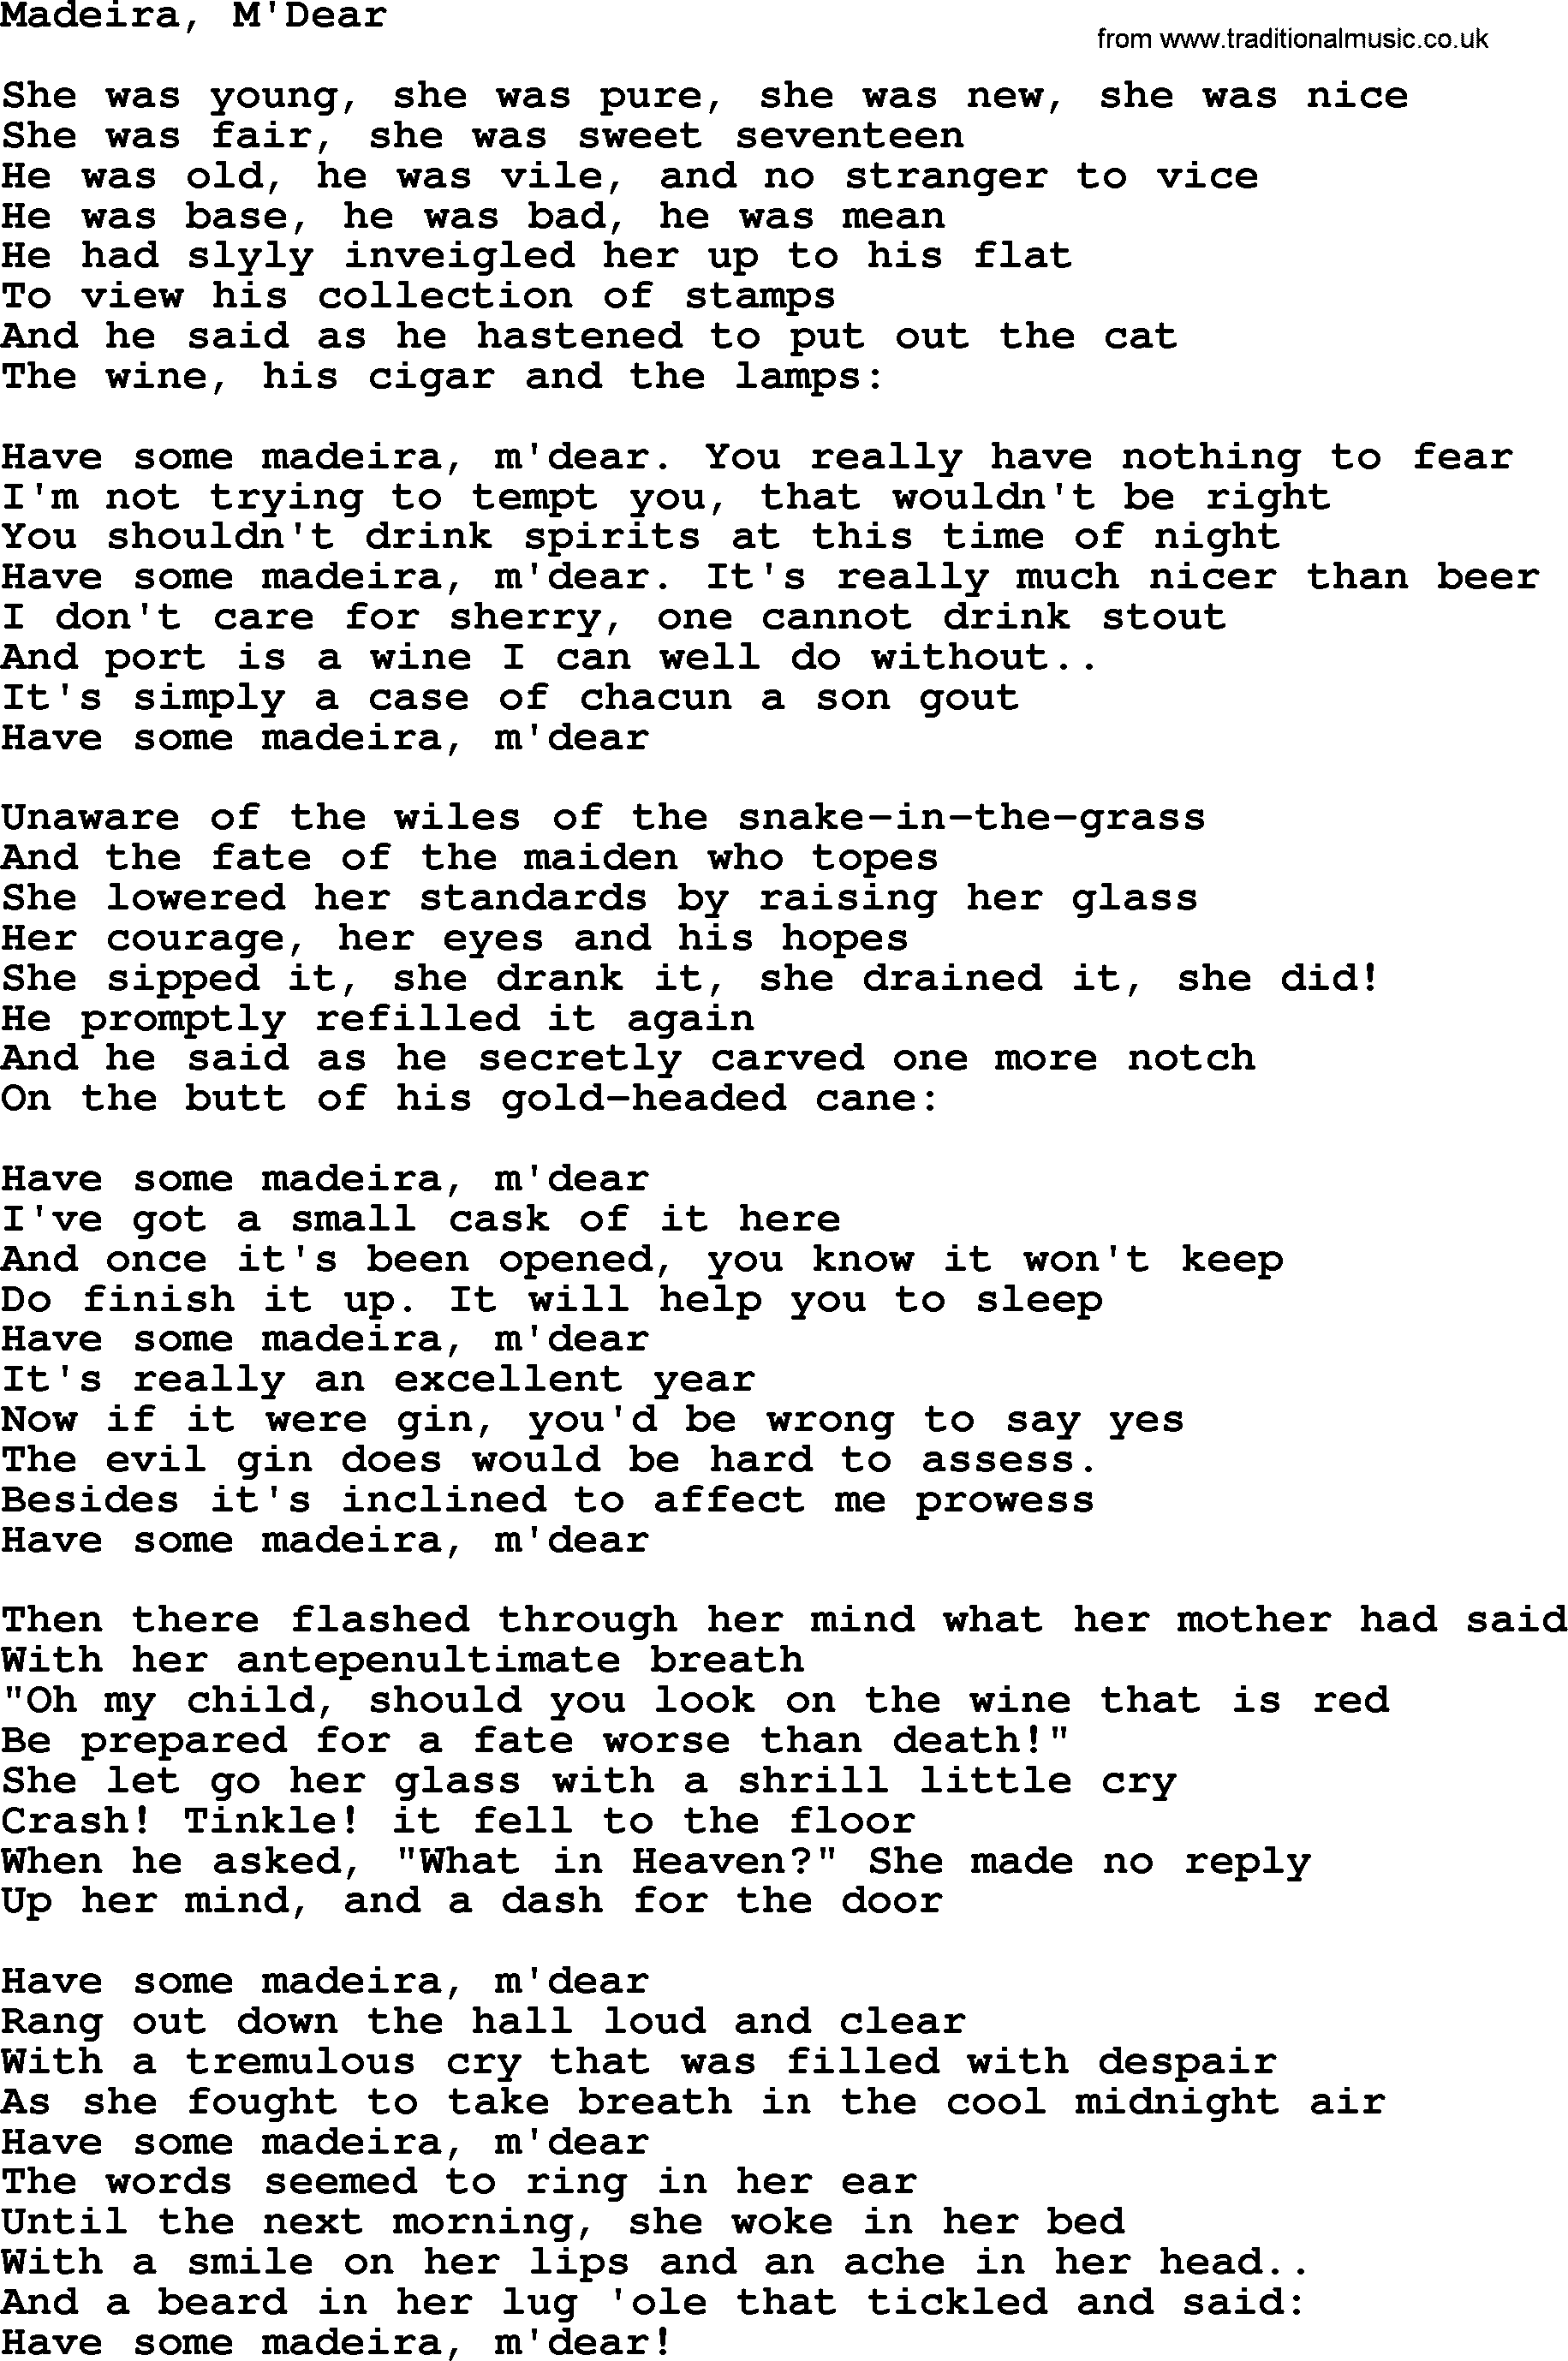 The Byrds song Madeira, M'dear, lyrics